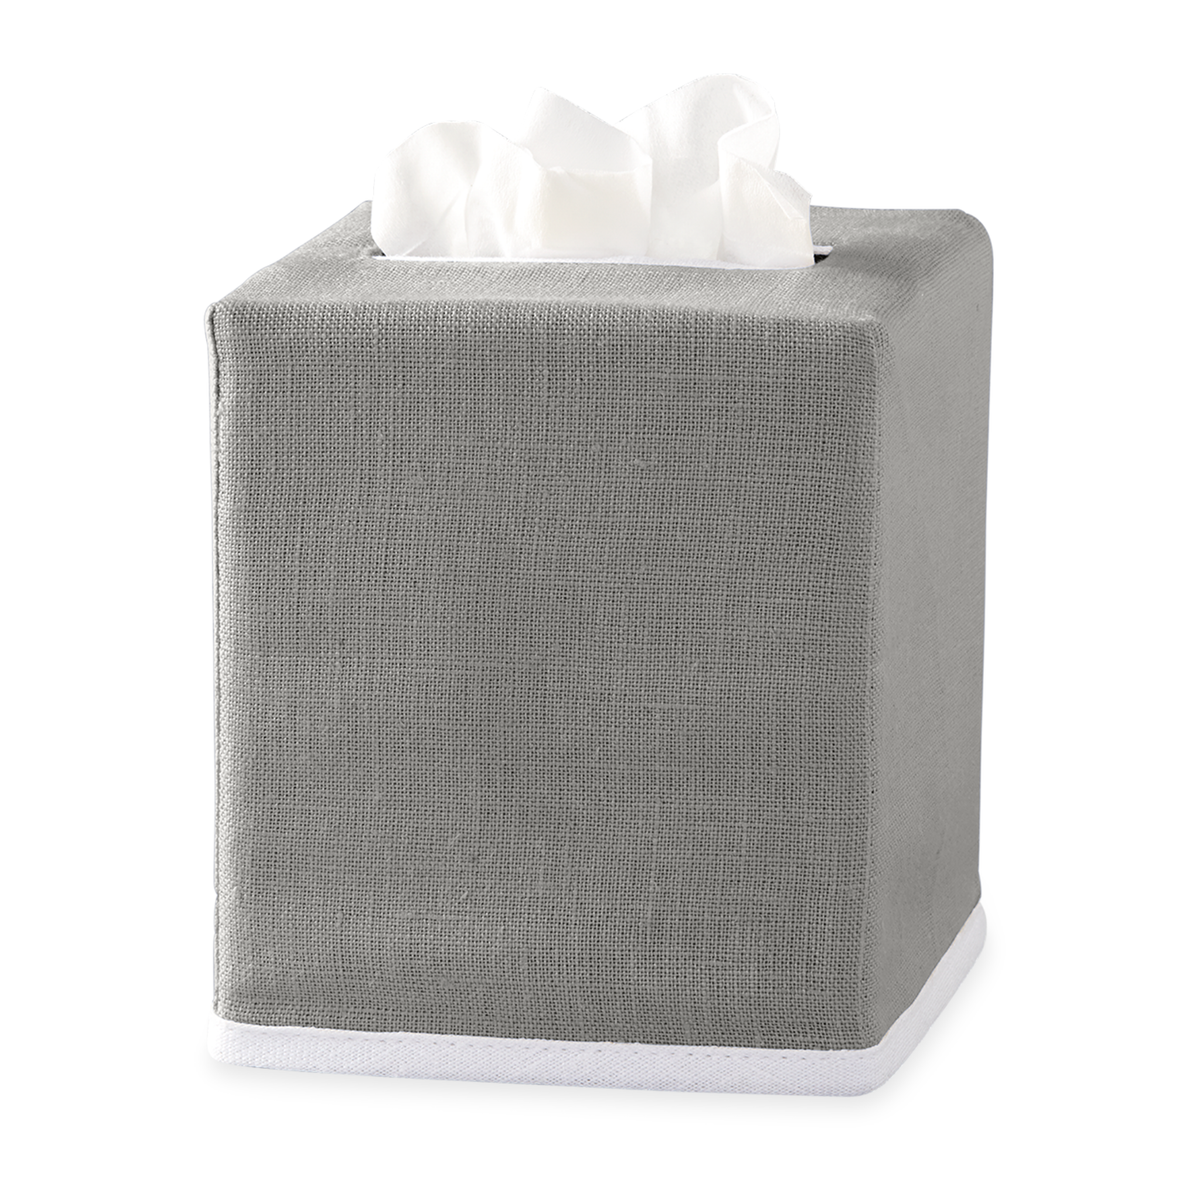 Grey Matouk Chelsea Linen Tissue Box Cover Against White Background